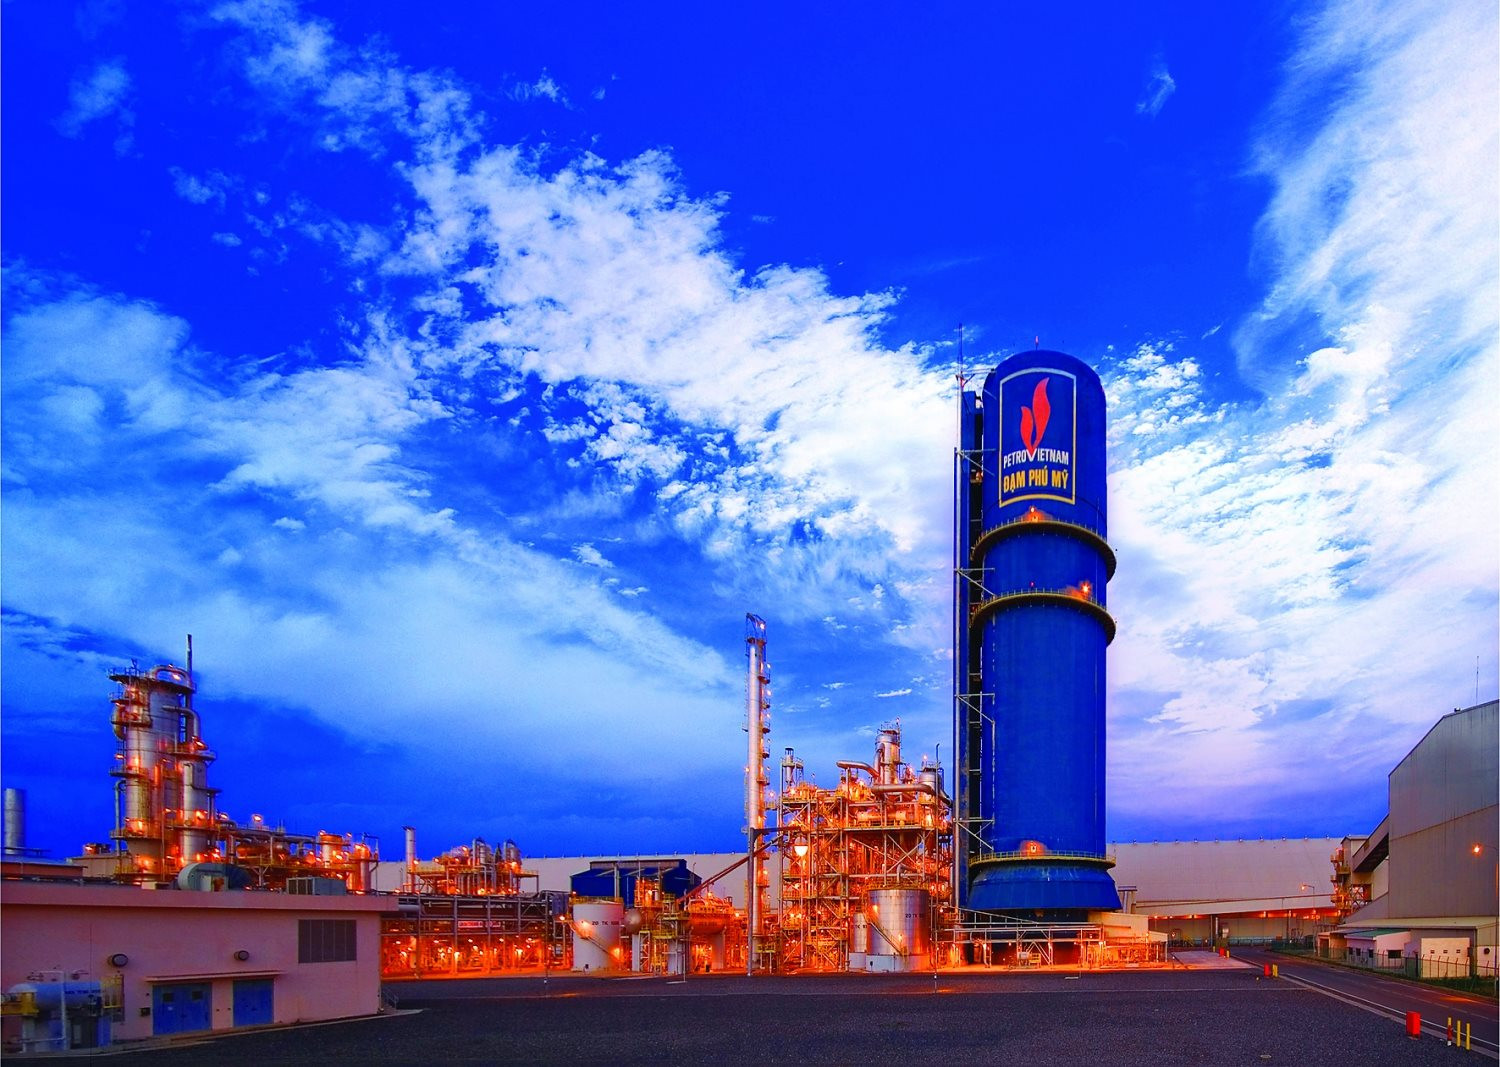 EVN đề nghị ngừng toàn bộ nhà máy Đạm Cà Mau và Đạm Phú Mỹ đến hết tháng 5 để nhường khí cho sản xuất điện - Ảnh 1.